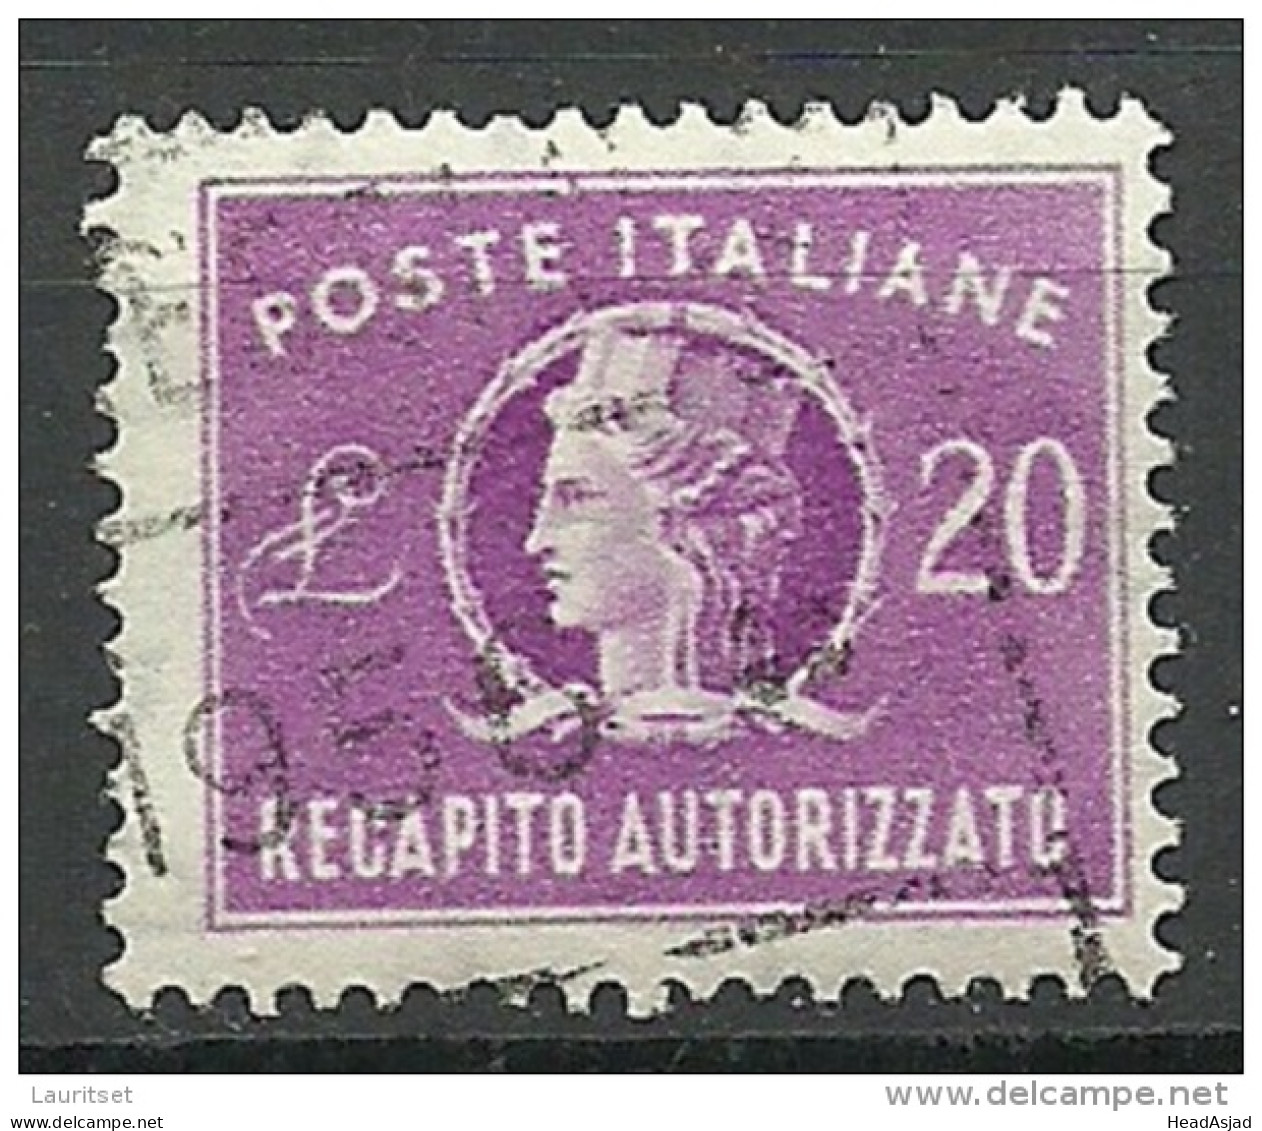 ITALIA ITALY Revenue Tax Fiscal Recapito Autorizzato 20 Lire O - Revenue Stamps